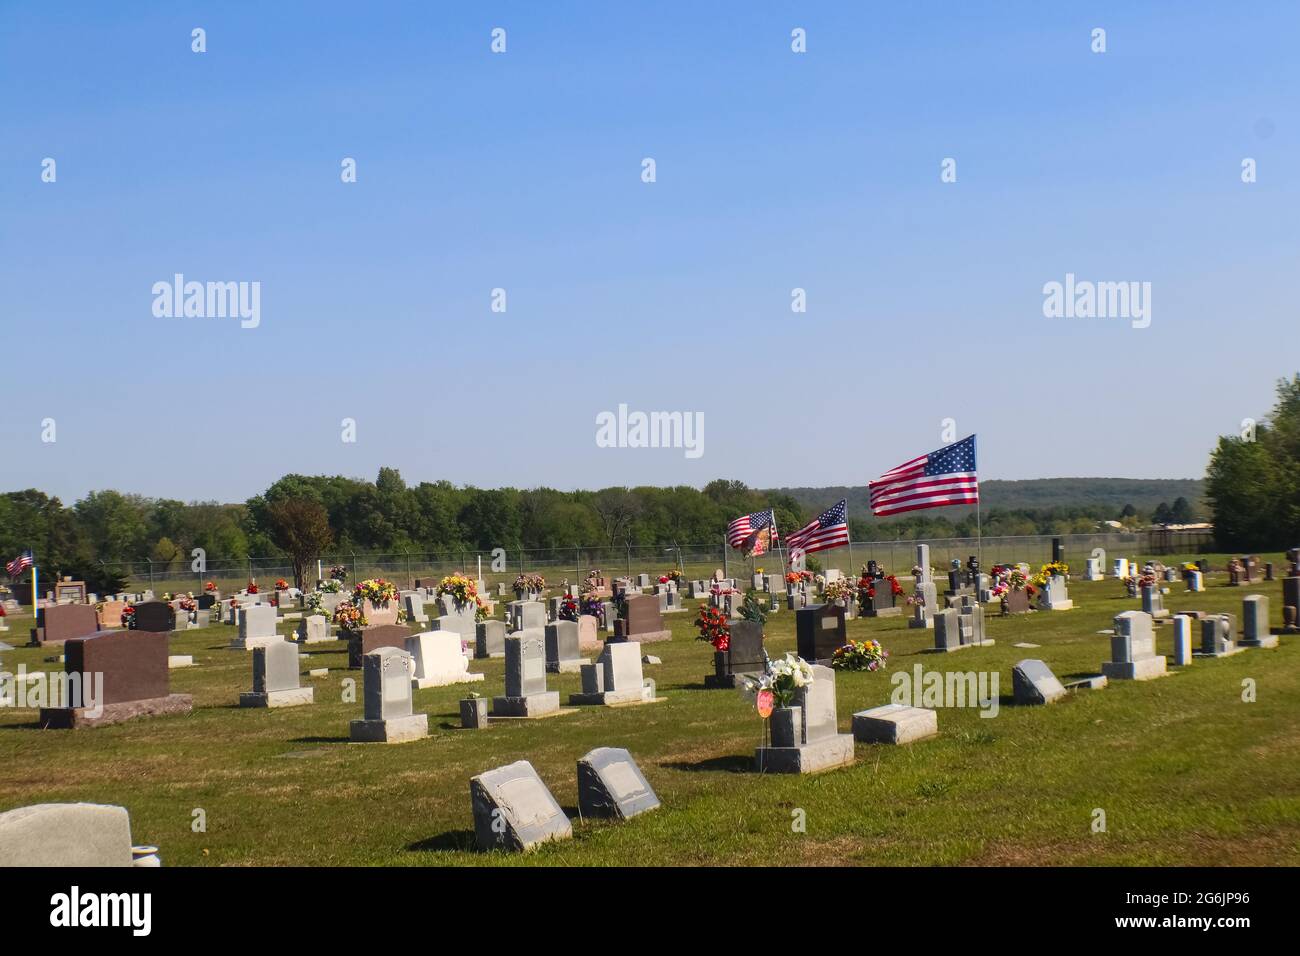 Amerikanische Flaggen, die über dem Friedhof fliegen, geschmückt mit Blumen für den Memorial Day in den Vereinigten Staaten mit Hügeln im Hintergrund Stockfoto